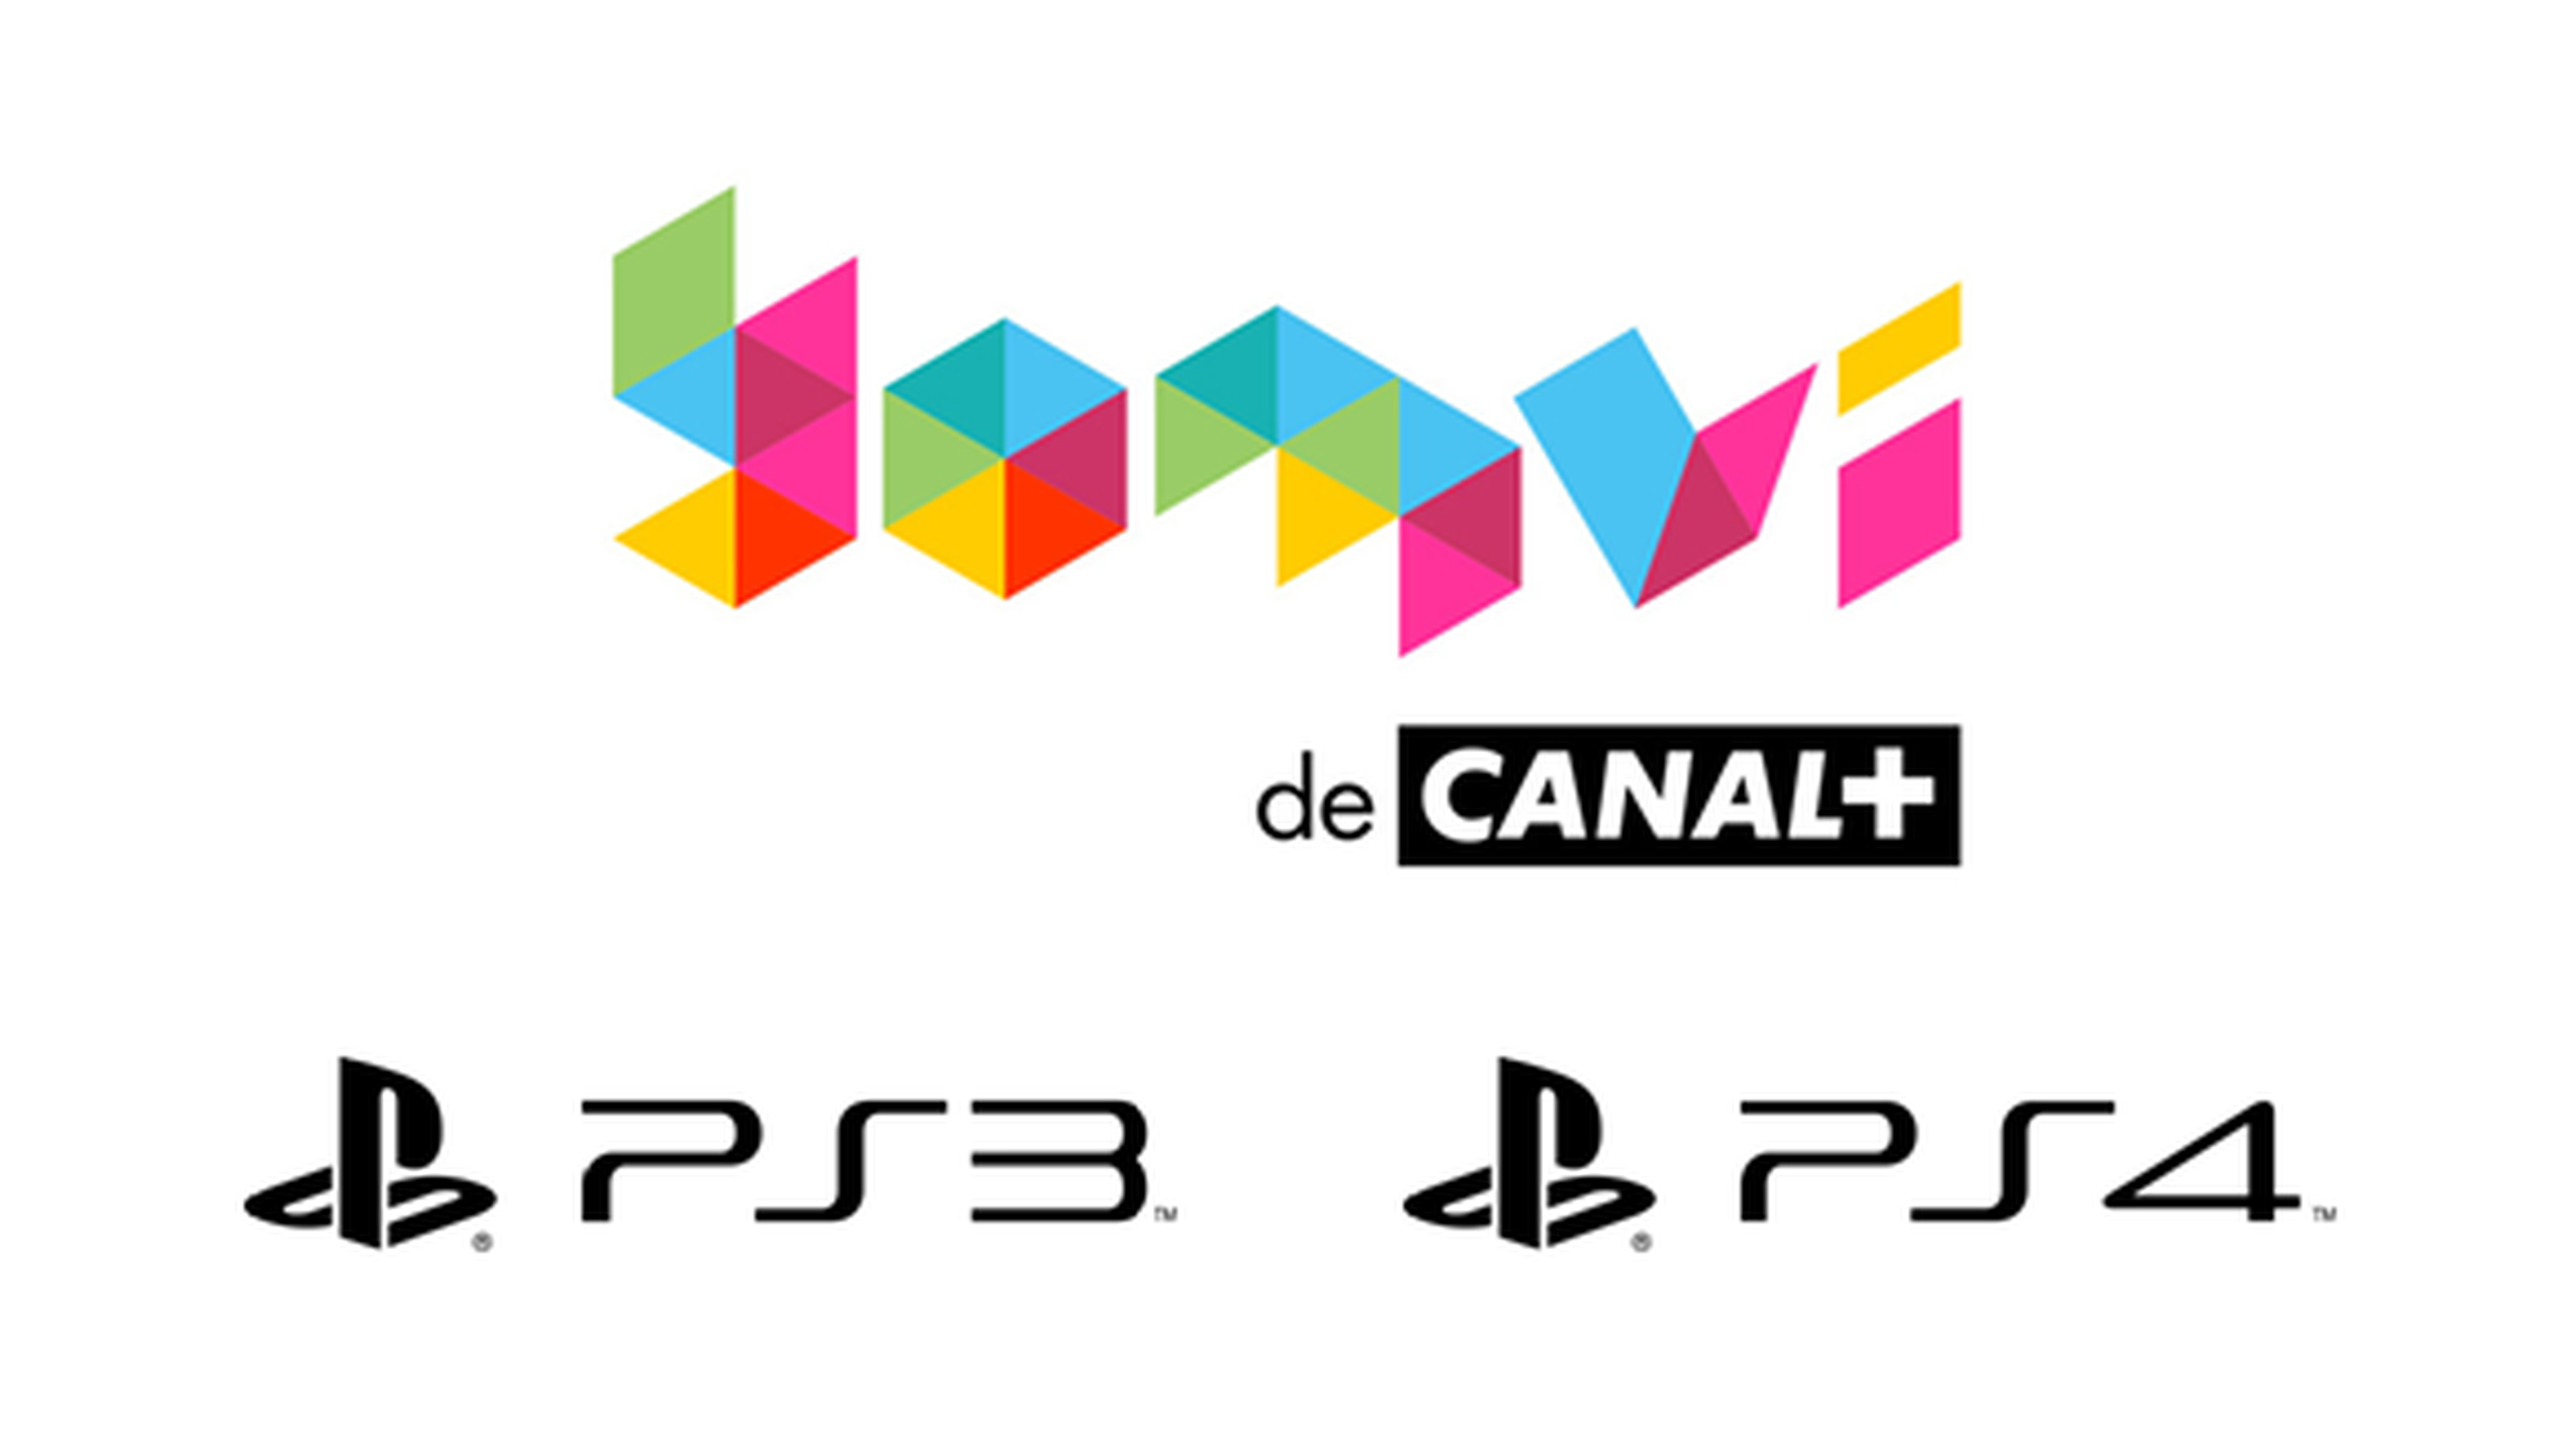 Canal+ Yomvi ya está disponible en PS4 y PS3